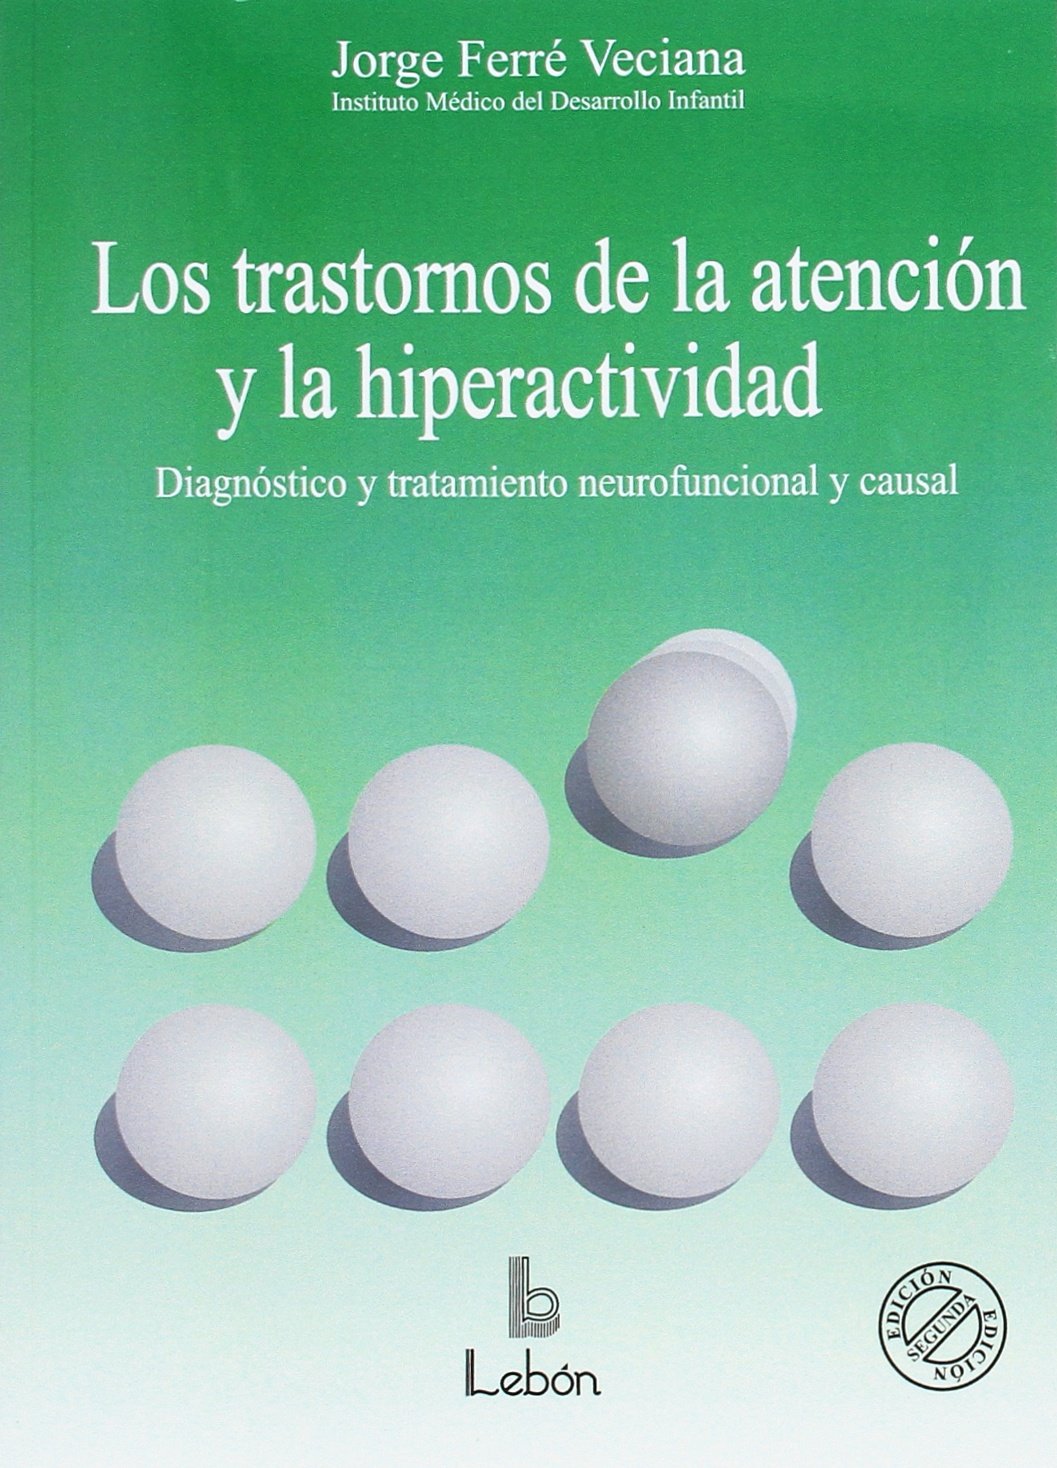 Los_trastornos_de_la_atencion_y_la_hiperactividad_diagn_stico_y_tratamiento_neurofuncional_y_causal.jpg